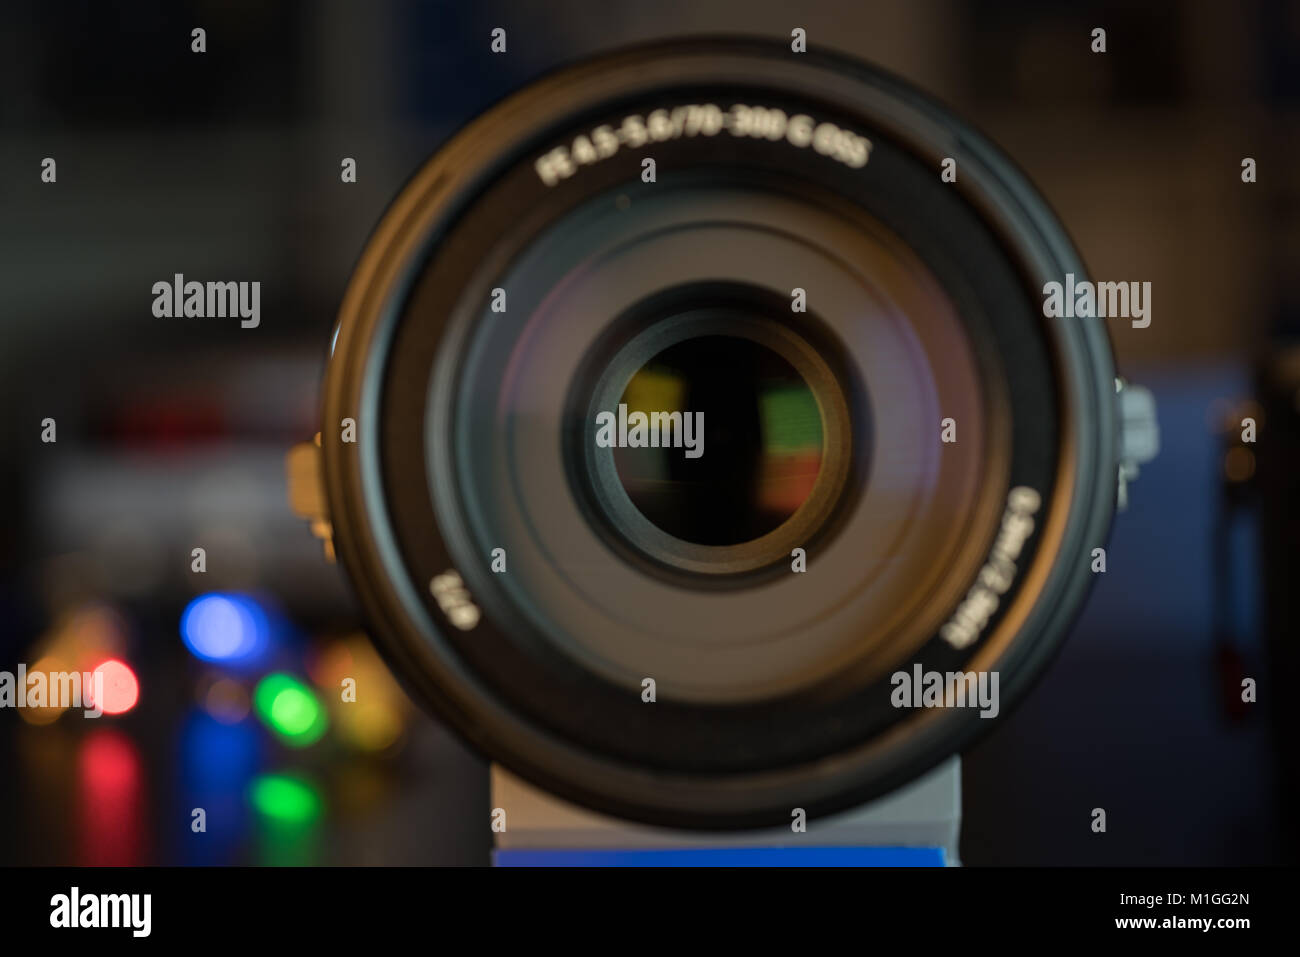 La photo ou caméra vidéo lens sur fond sombre avec des reflets d'objectif Banque D'Images